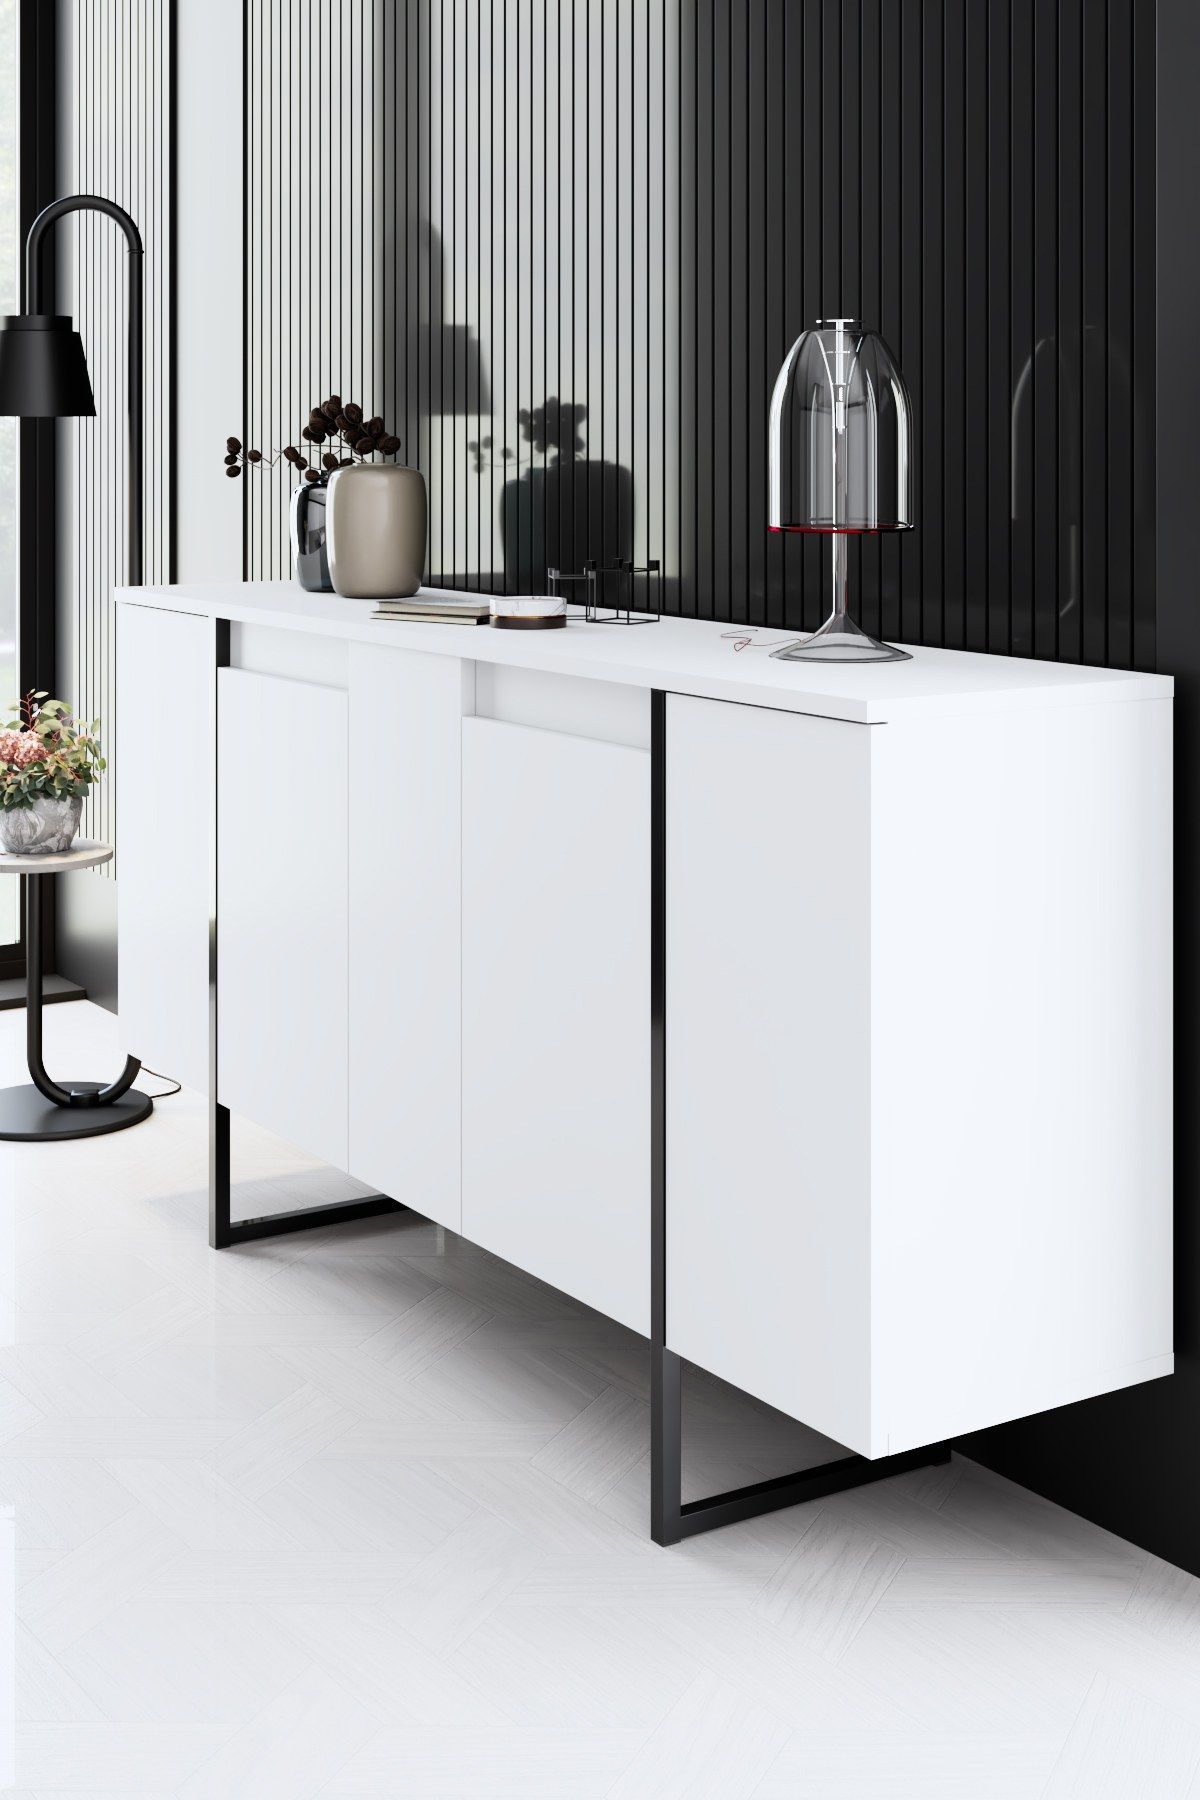 Luxe - Hvid, Sort Stue møbel sæt Hvid sort